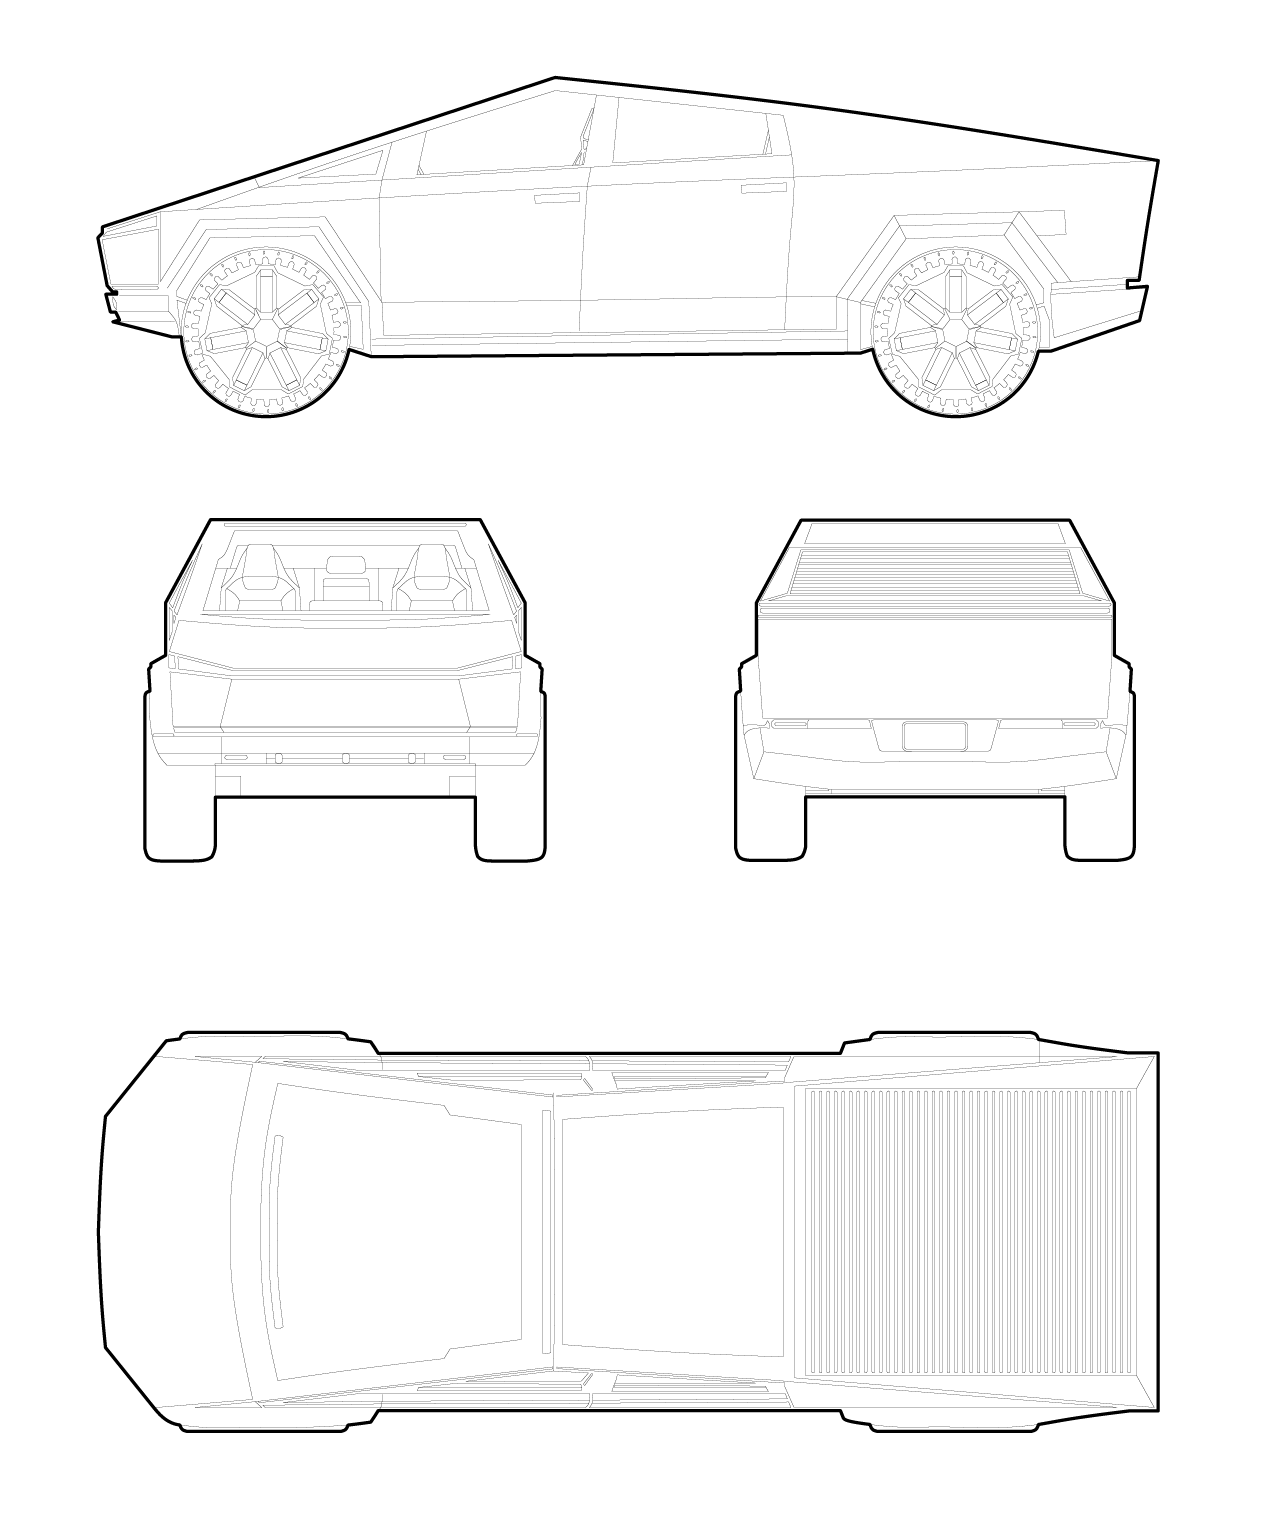 Drawing of Tesla Cybertruck cars dwg